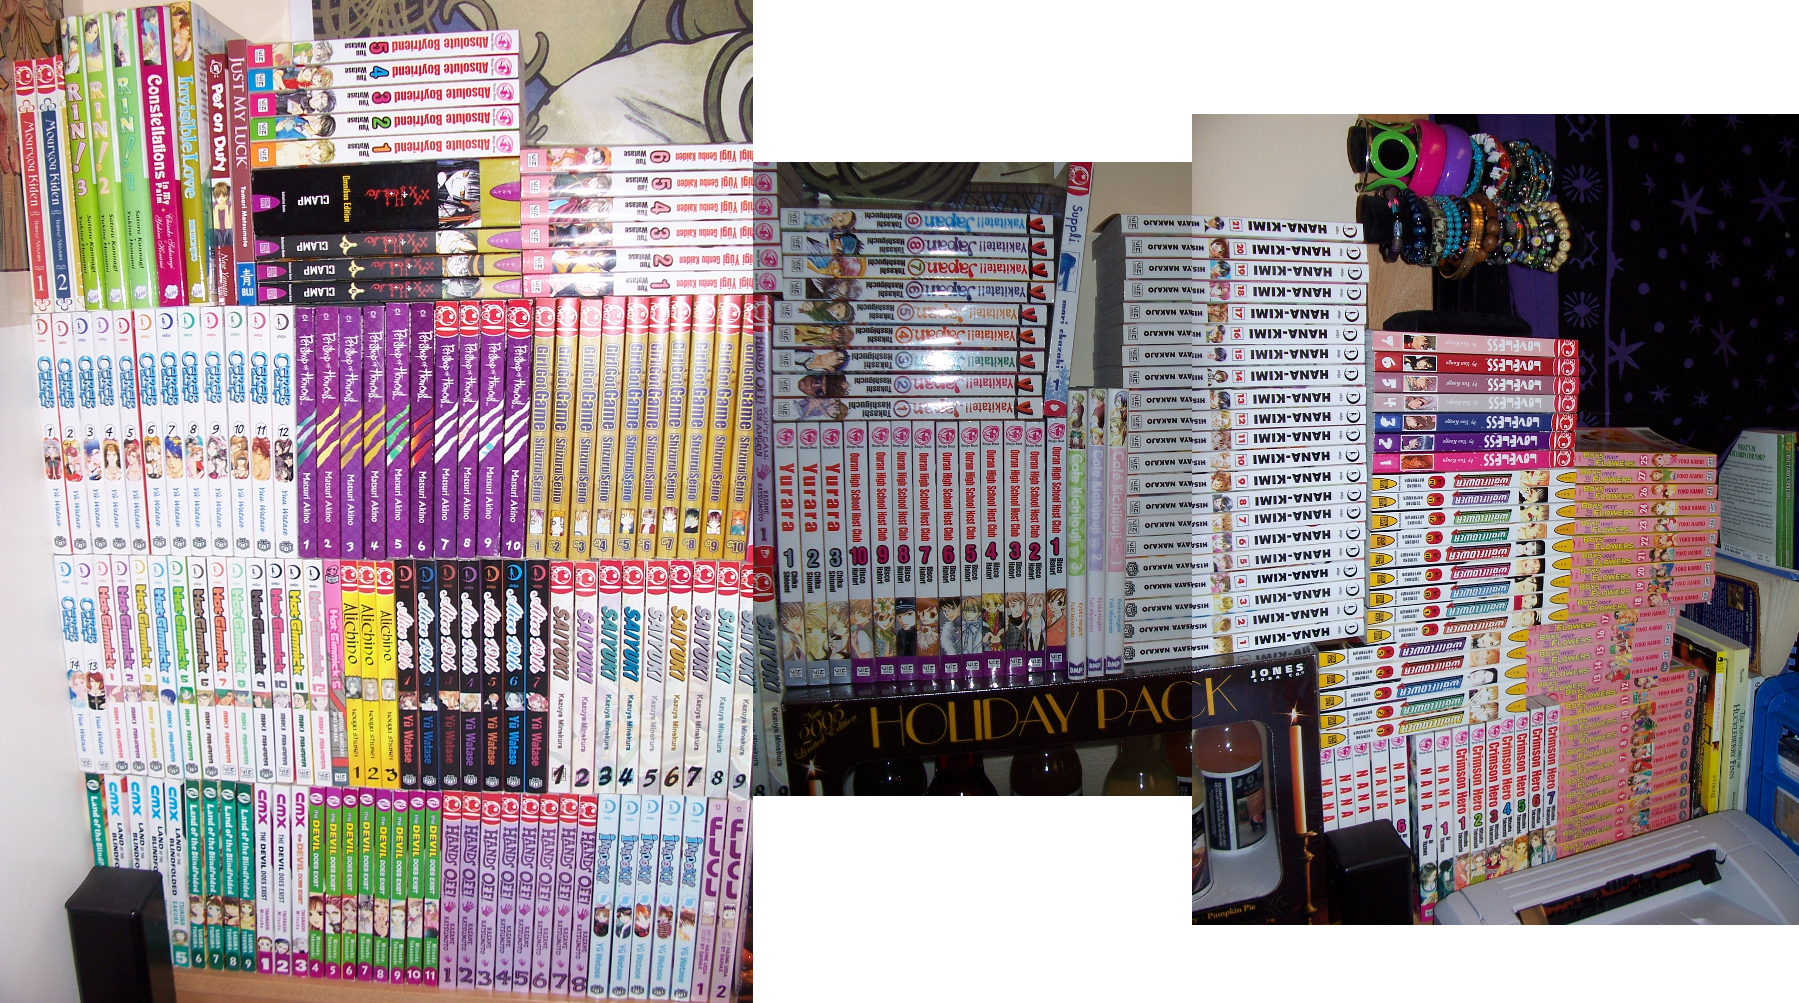 Manga Collection